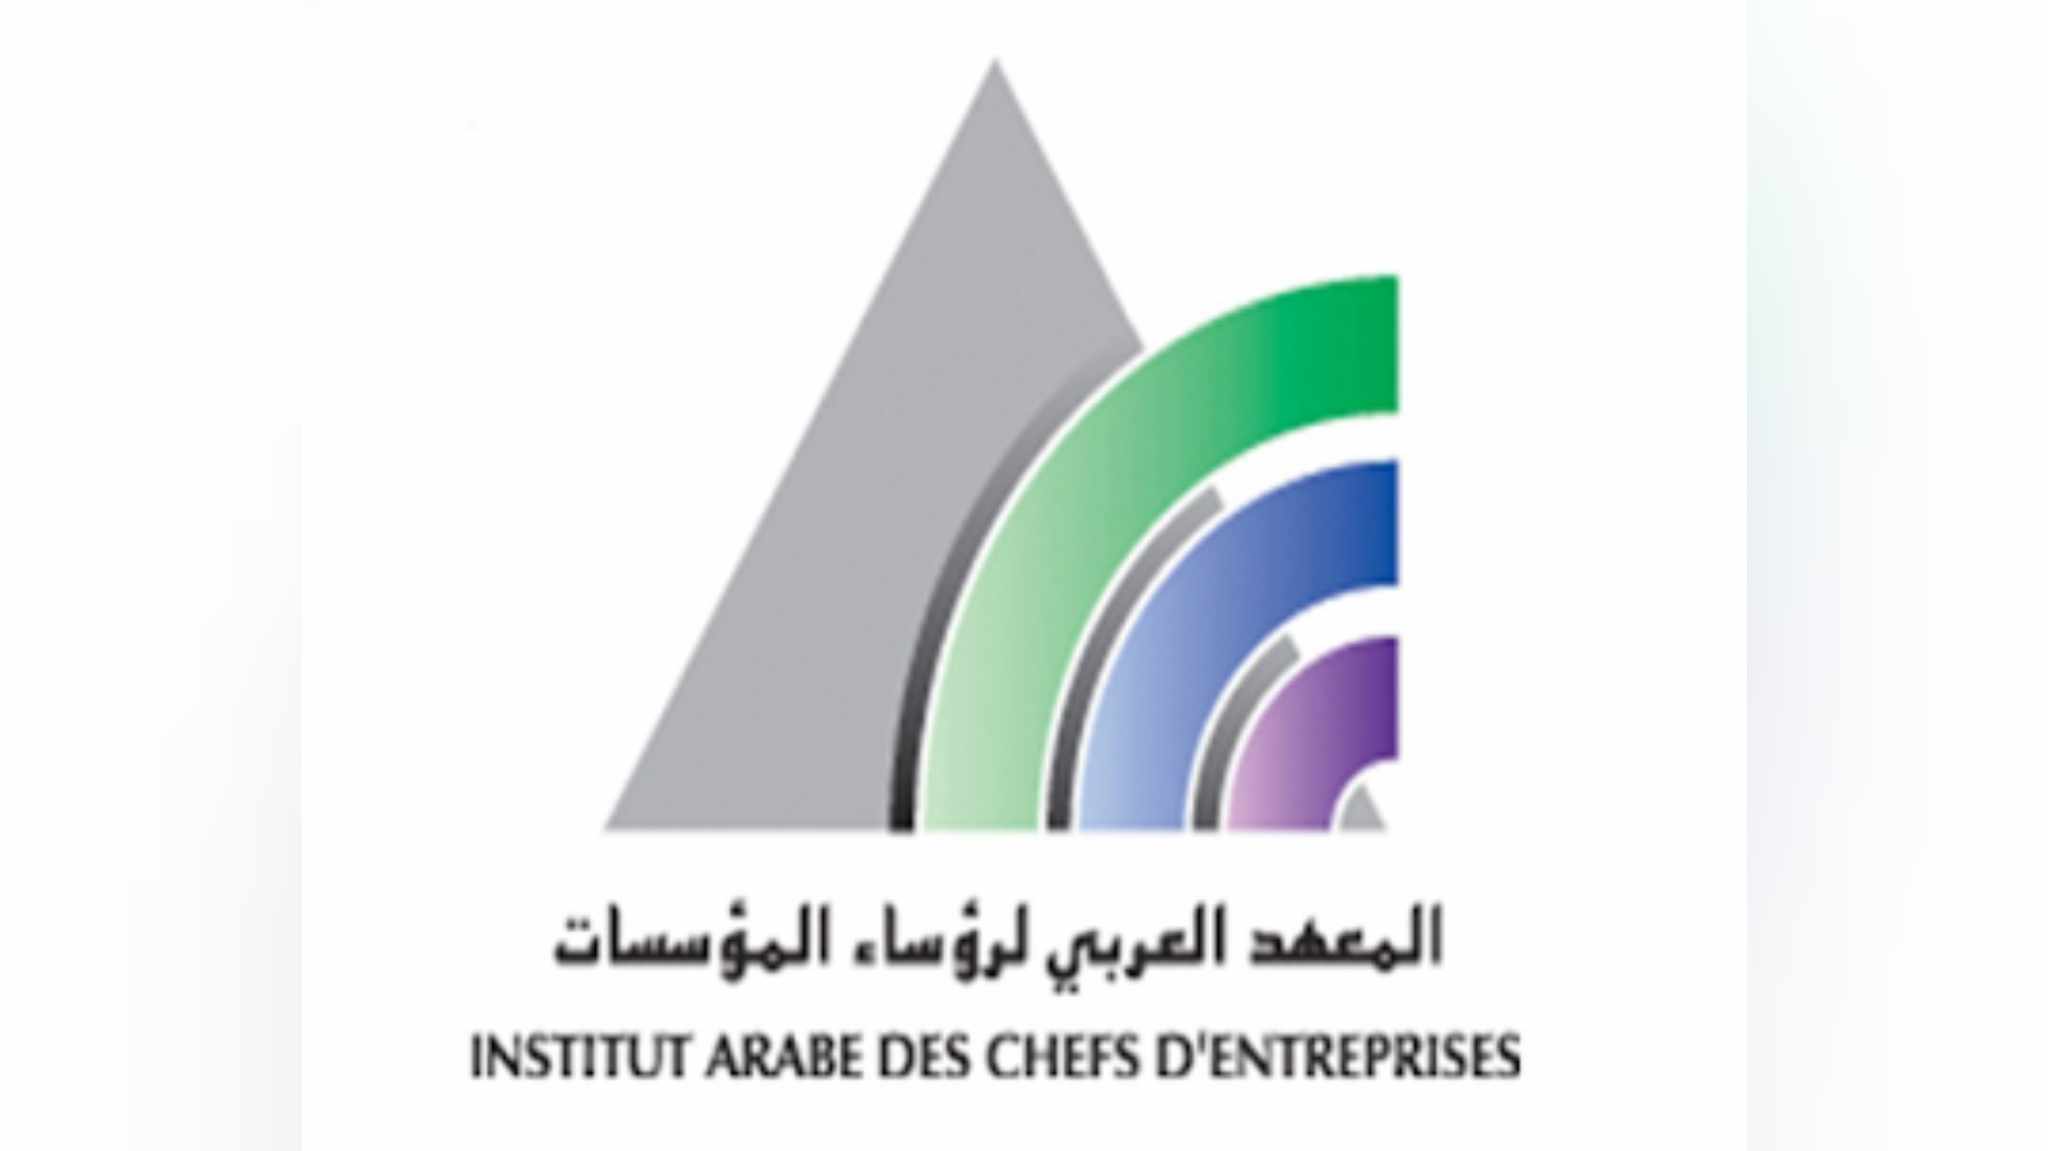 المعهد العربي لرؤساء المؤسسات يحذر: ارتفاع أسعار "النحاس" يهدد مستقبل الصناعة التونسية !